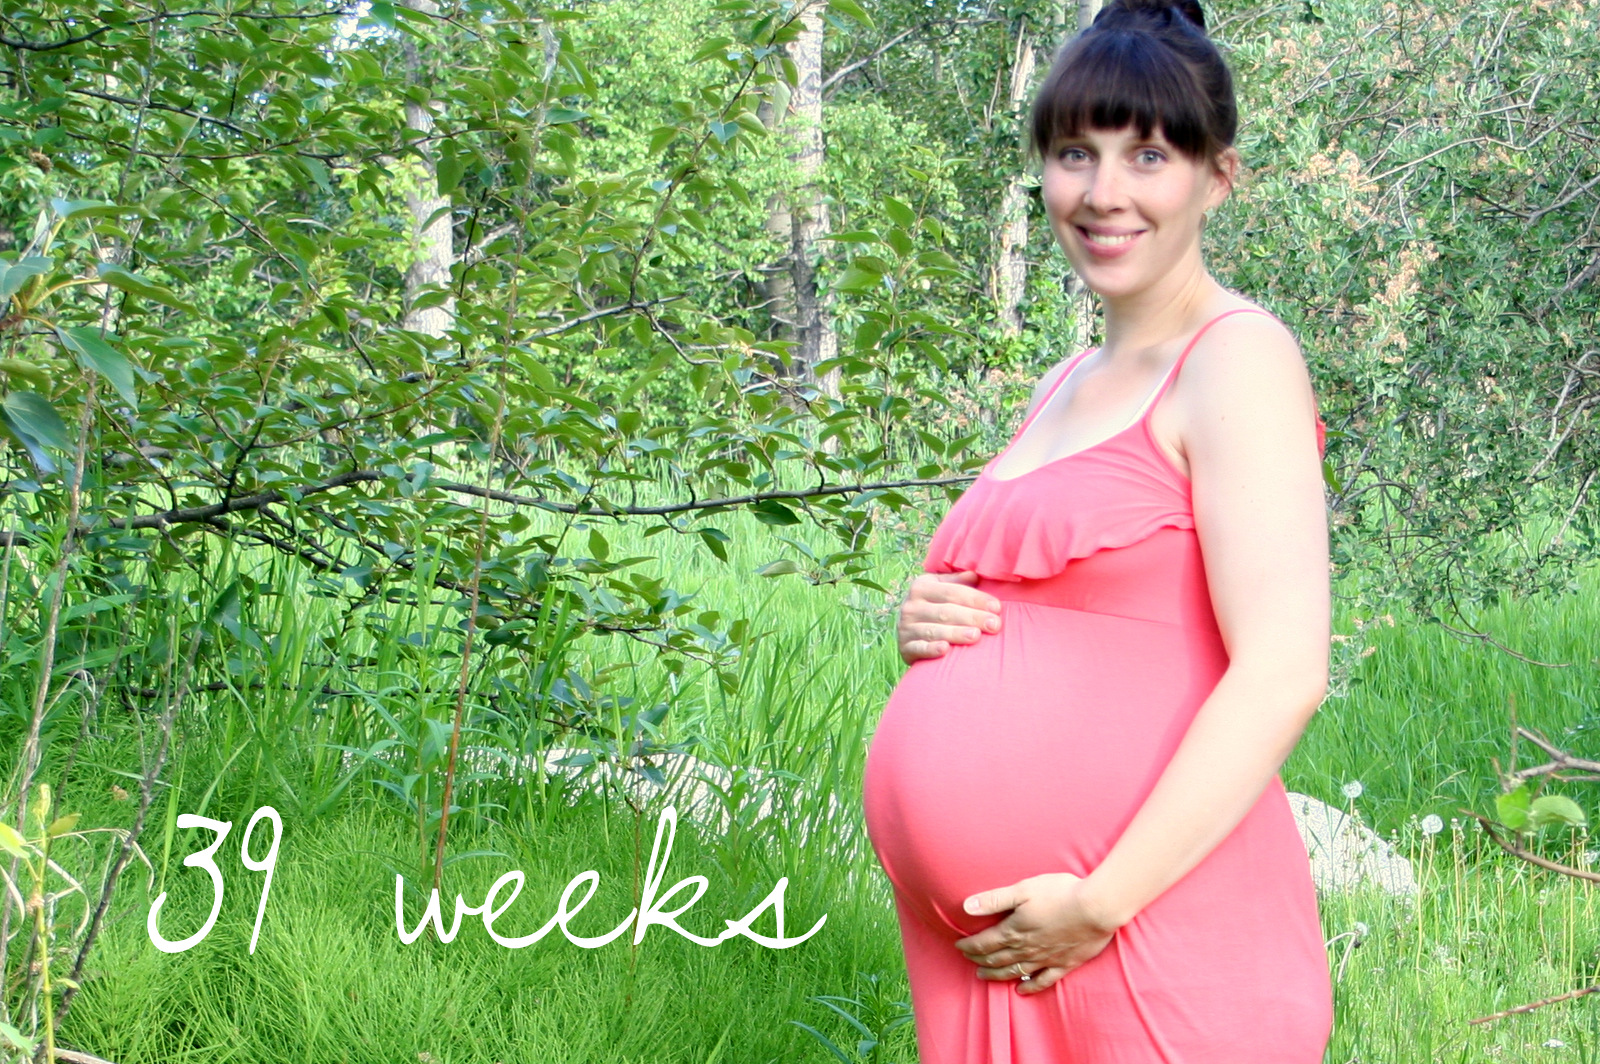 Частый стул в 37 недель беременности